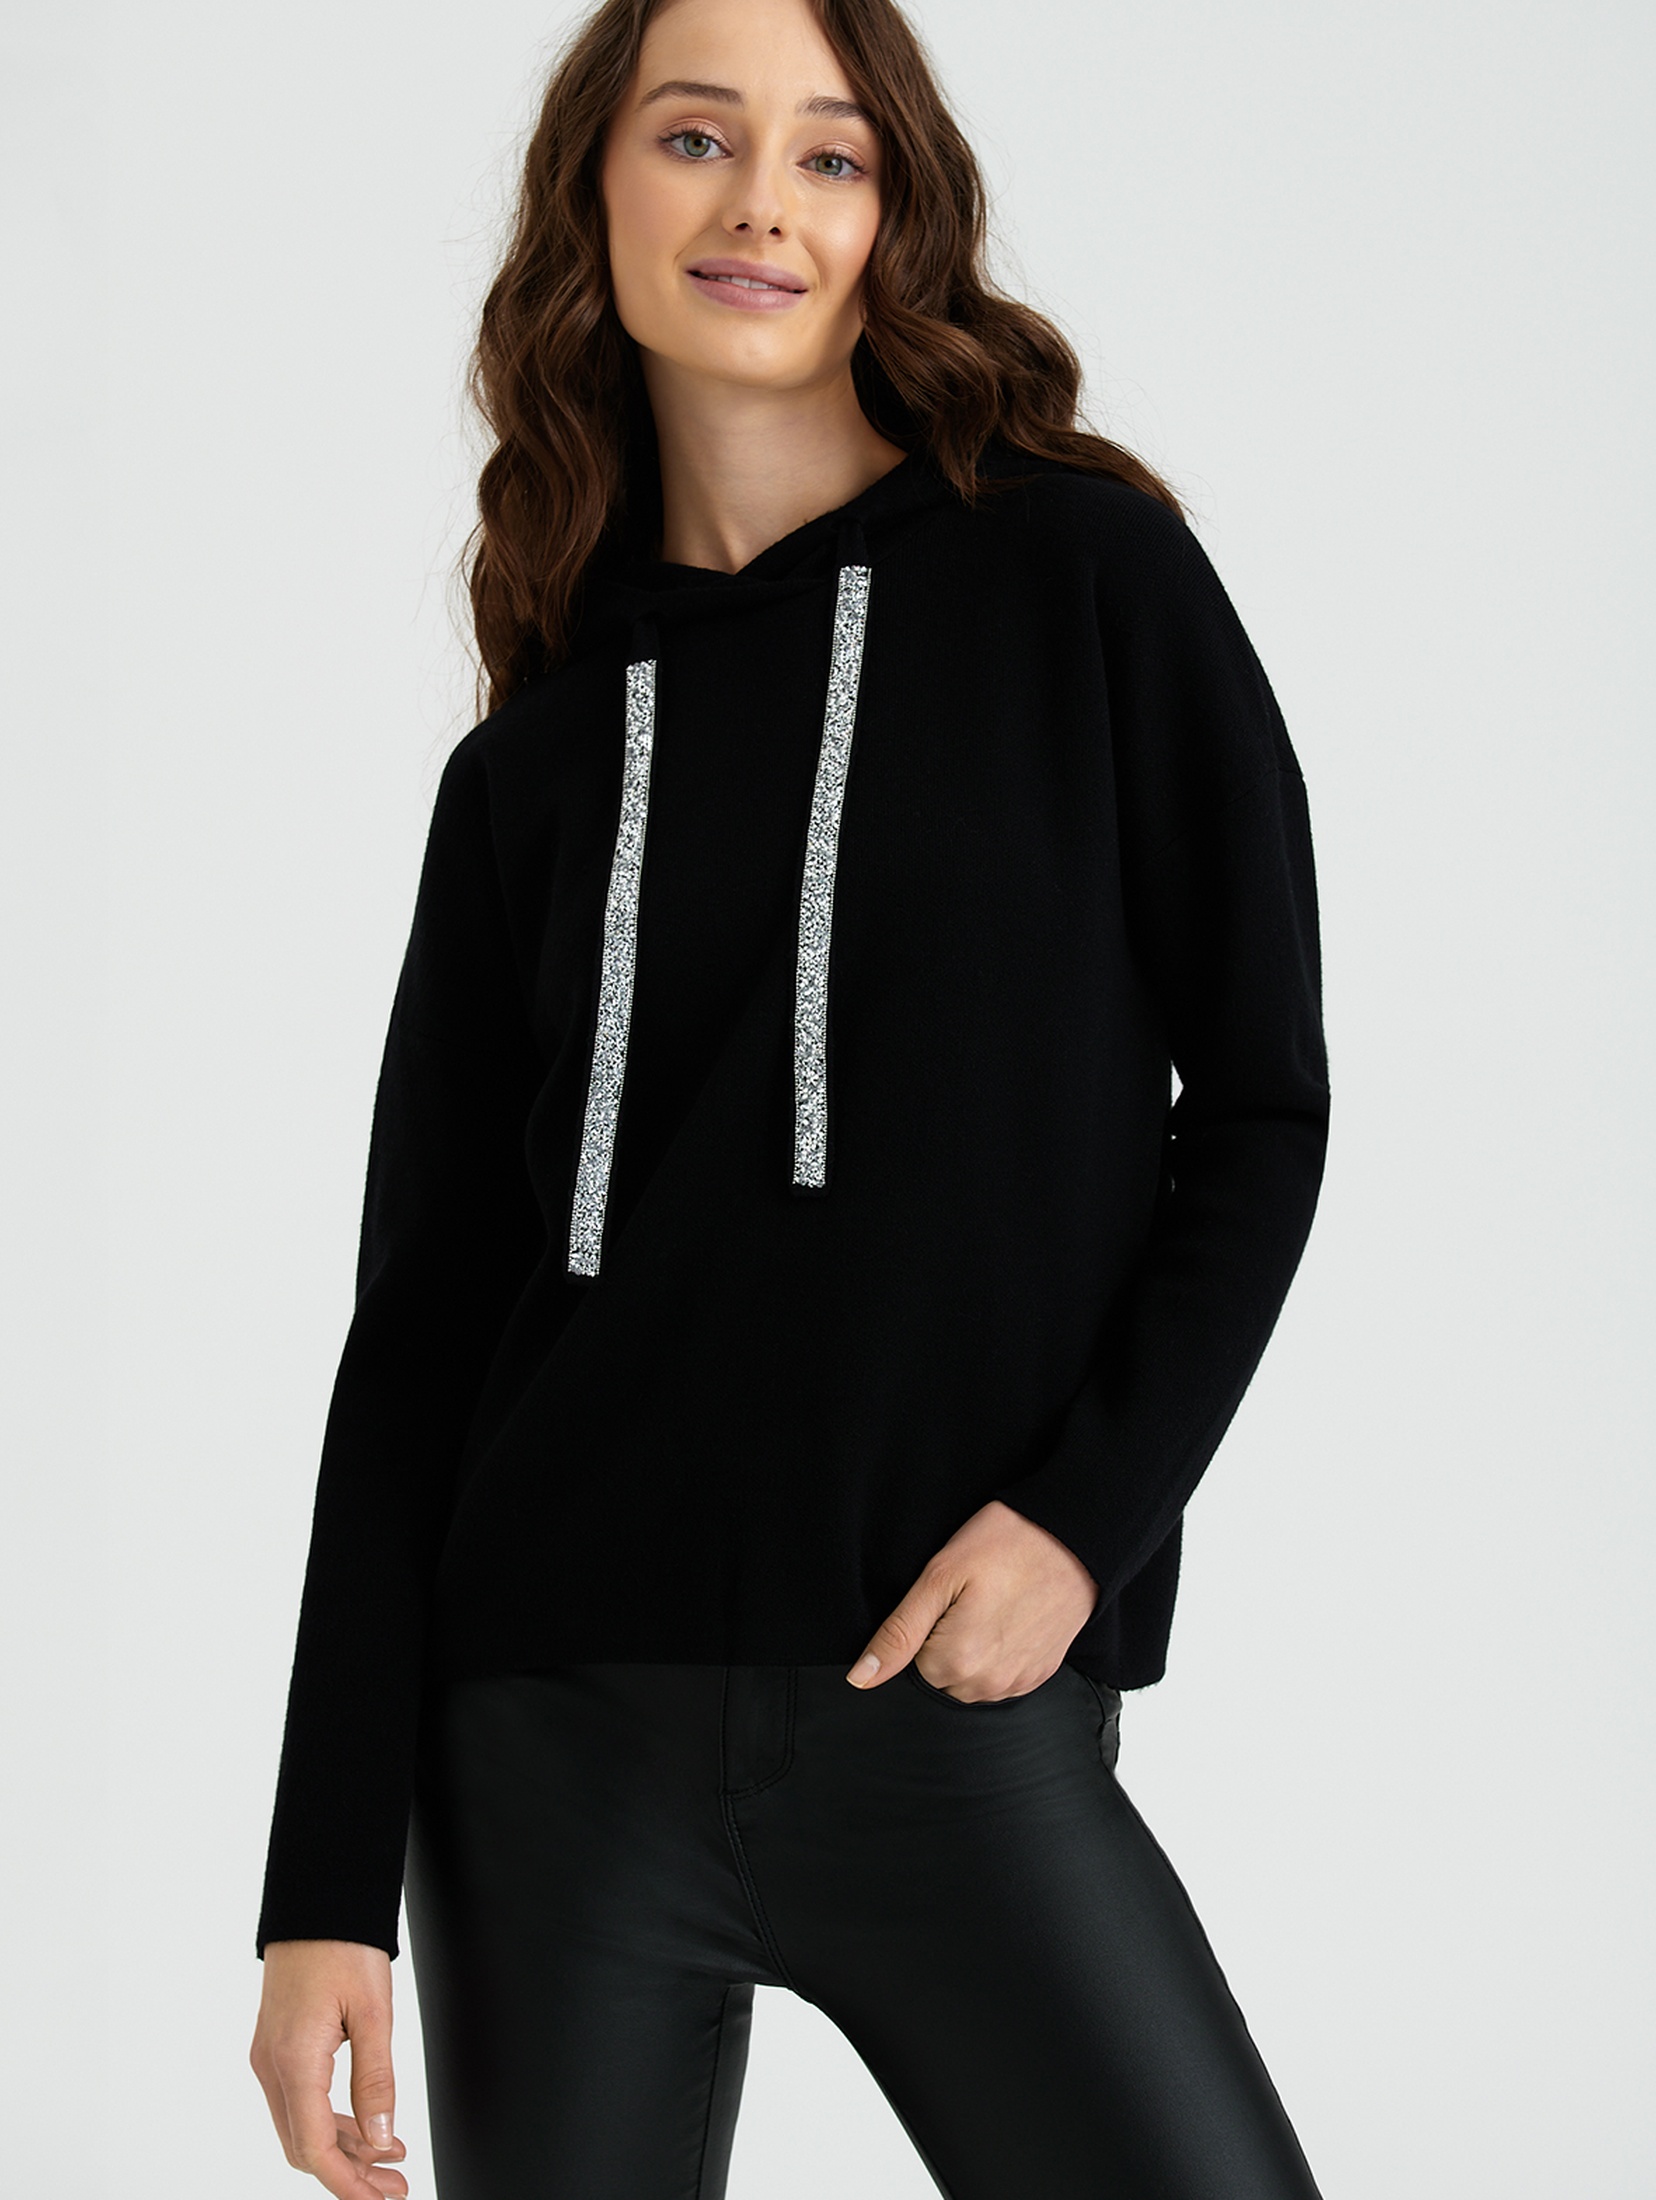 Czarny sweter damski z kapturem - Greenpoint